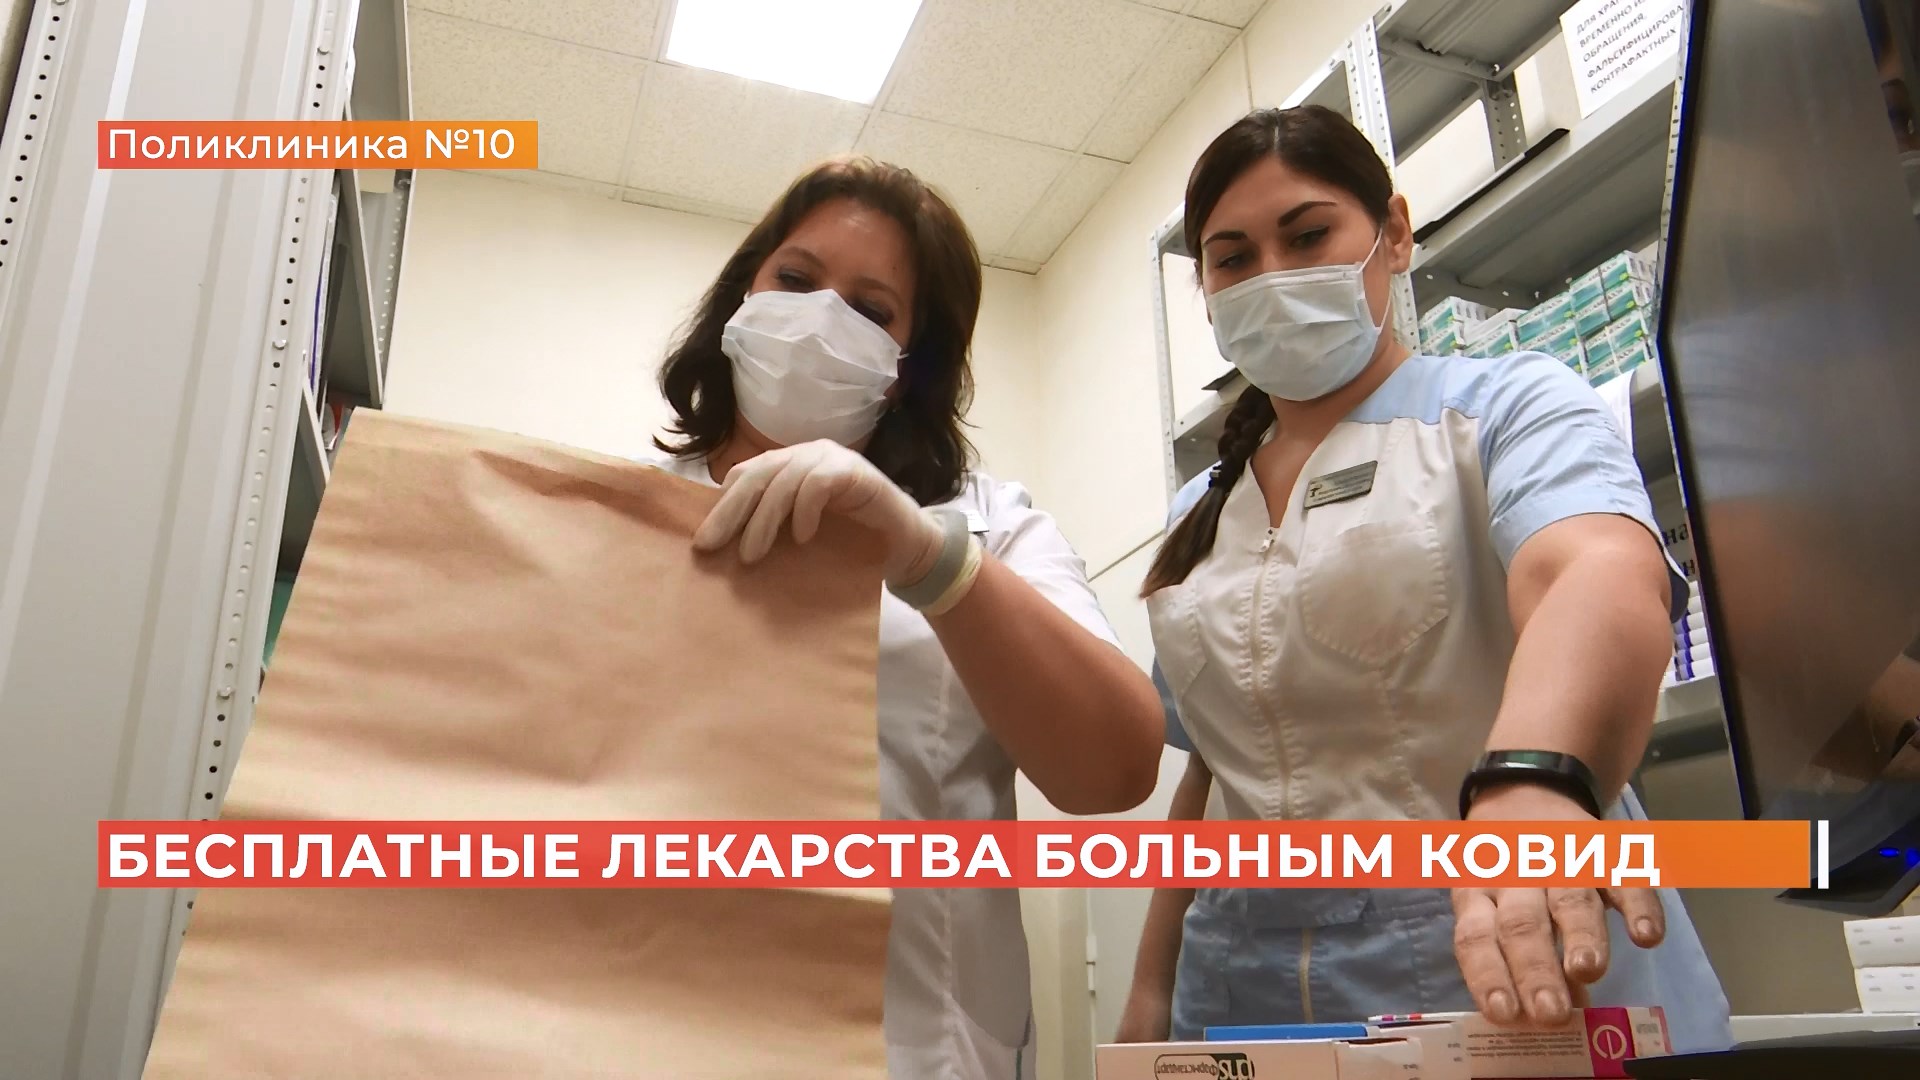 Ростовские врачи: бесплатных лекарств для болеющих коронавирусом хватает на всех пациентов